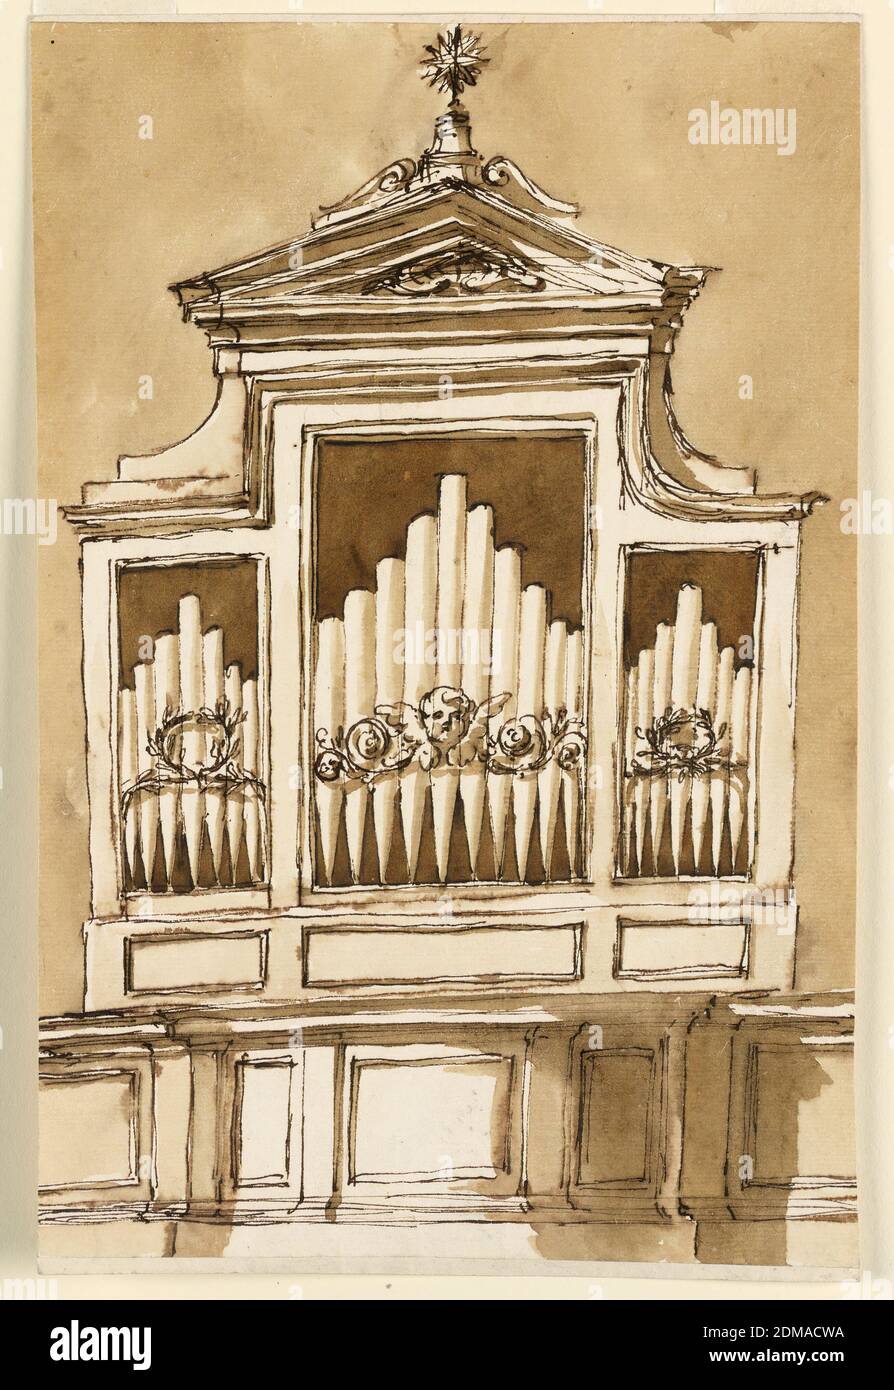 Entwurf für eine Orgel, Giuseppe Barberi, italienisch, 1746–1809, Feder und braune Tusche, Pinsel und braune Wäsche auf liniertem, cremefarbenem Büttenpapier, darunter der zentrale Teil der Einzäunung des Lofts (siehe 1901-39-2738). Jedes Fach ist rechtwinklig gerahmt. Über dem zentralen ist ein dreieckiger Giebel, mit einem Regal innen und einem Stern oben. Vor den Pfeifen befindet sich im Mittelfach eine Variation des entsprechenden Motivs in 1901-39-2784, ohne Festoons. In den Seitenzweigen kreuzten sich zwei Zweige zu einem Kranz. Die Wand ist farbig., Rom, Italien, 1780-1790, Architektur, Zeichnung Stockfoto